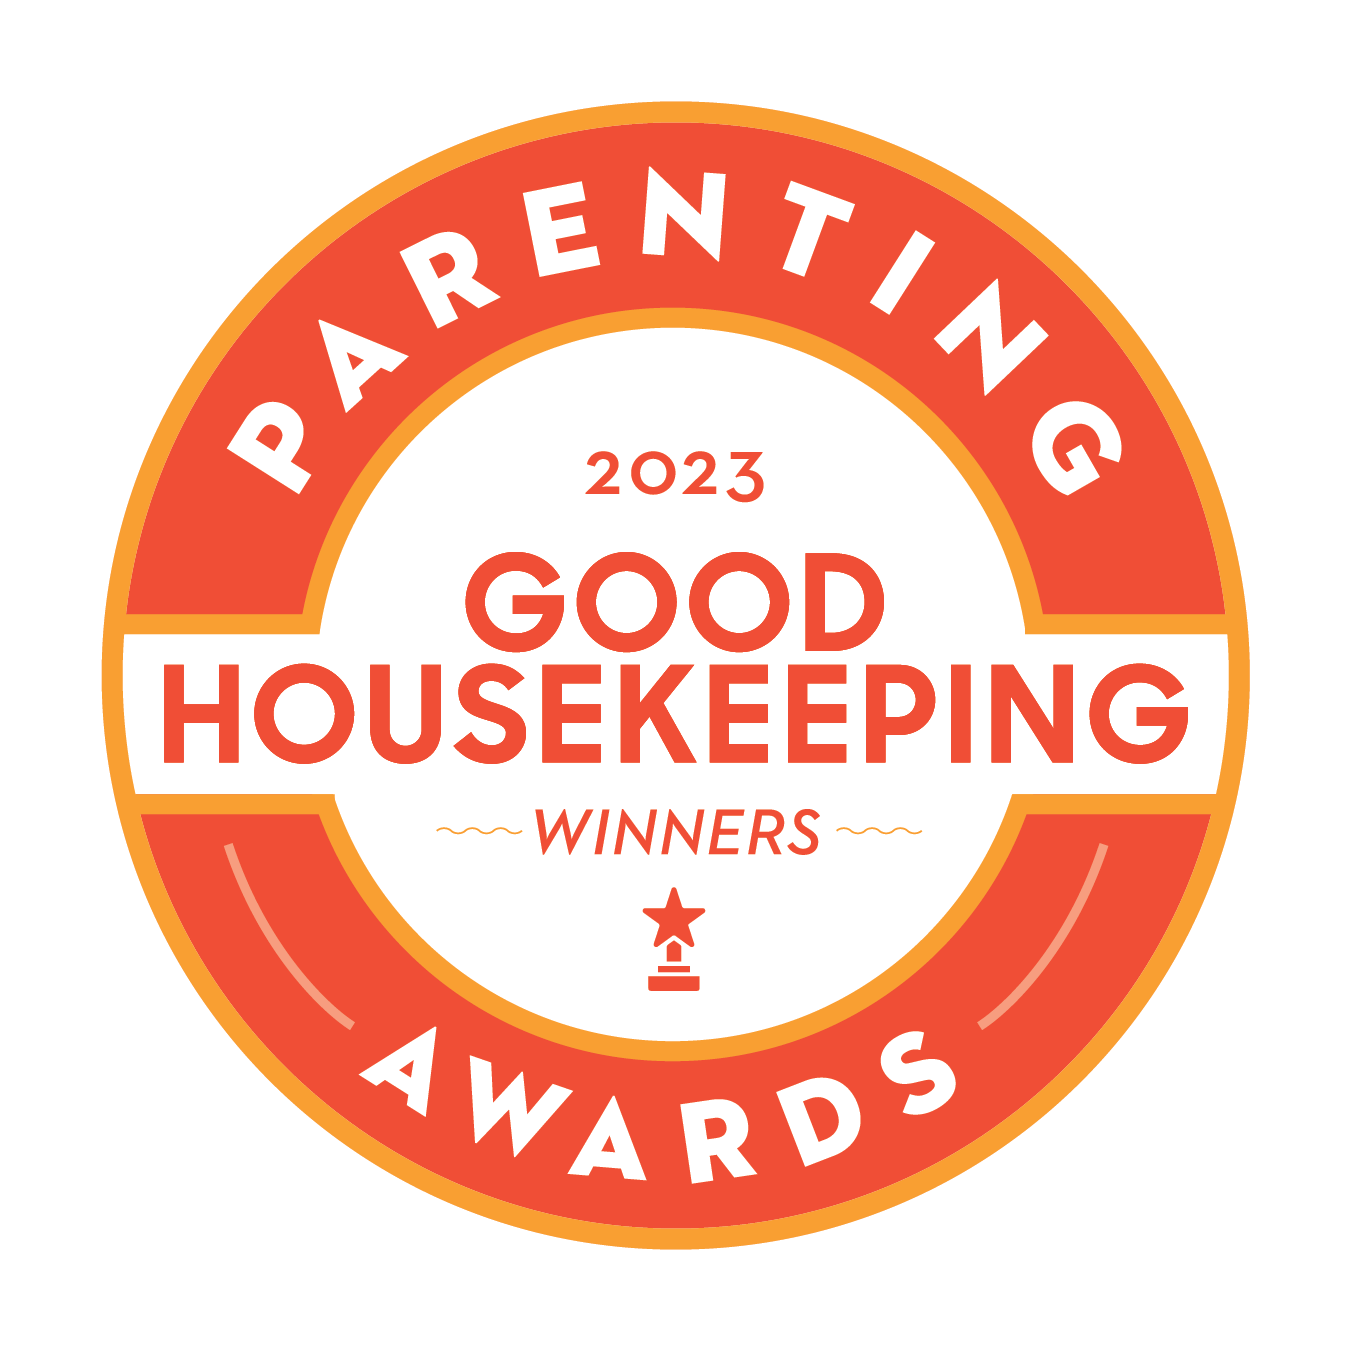 Parenting 2023 Good House Keeping Awards